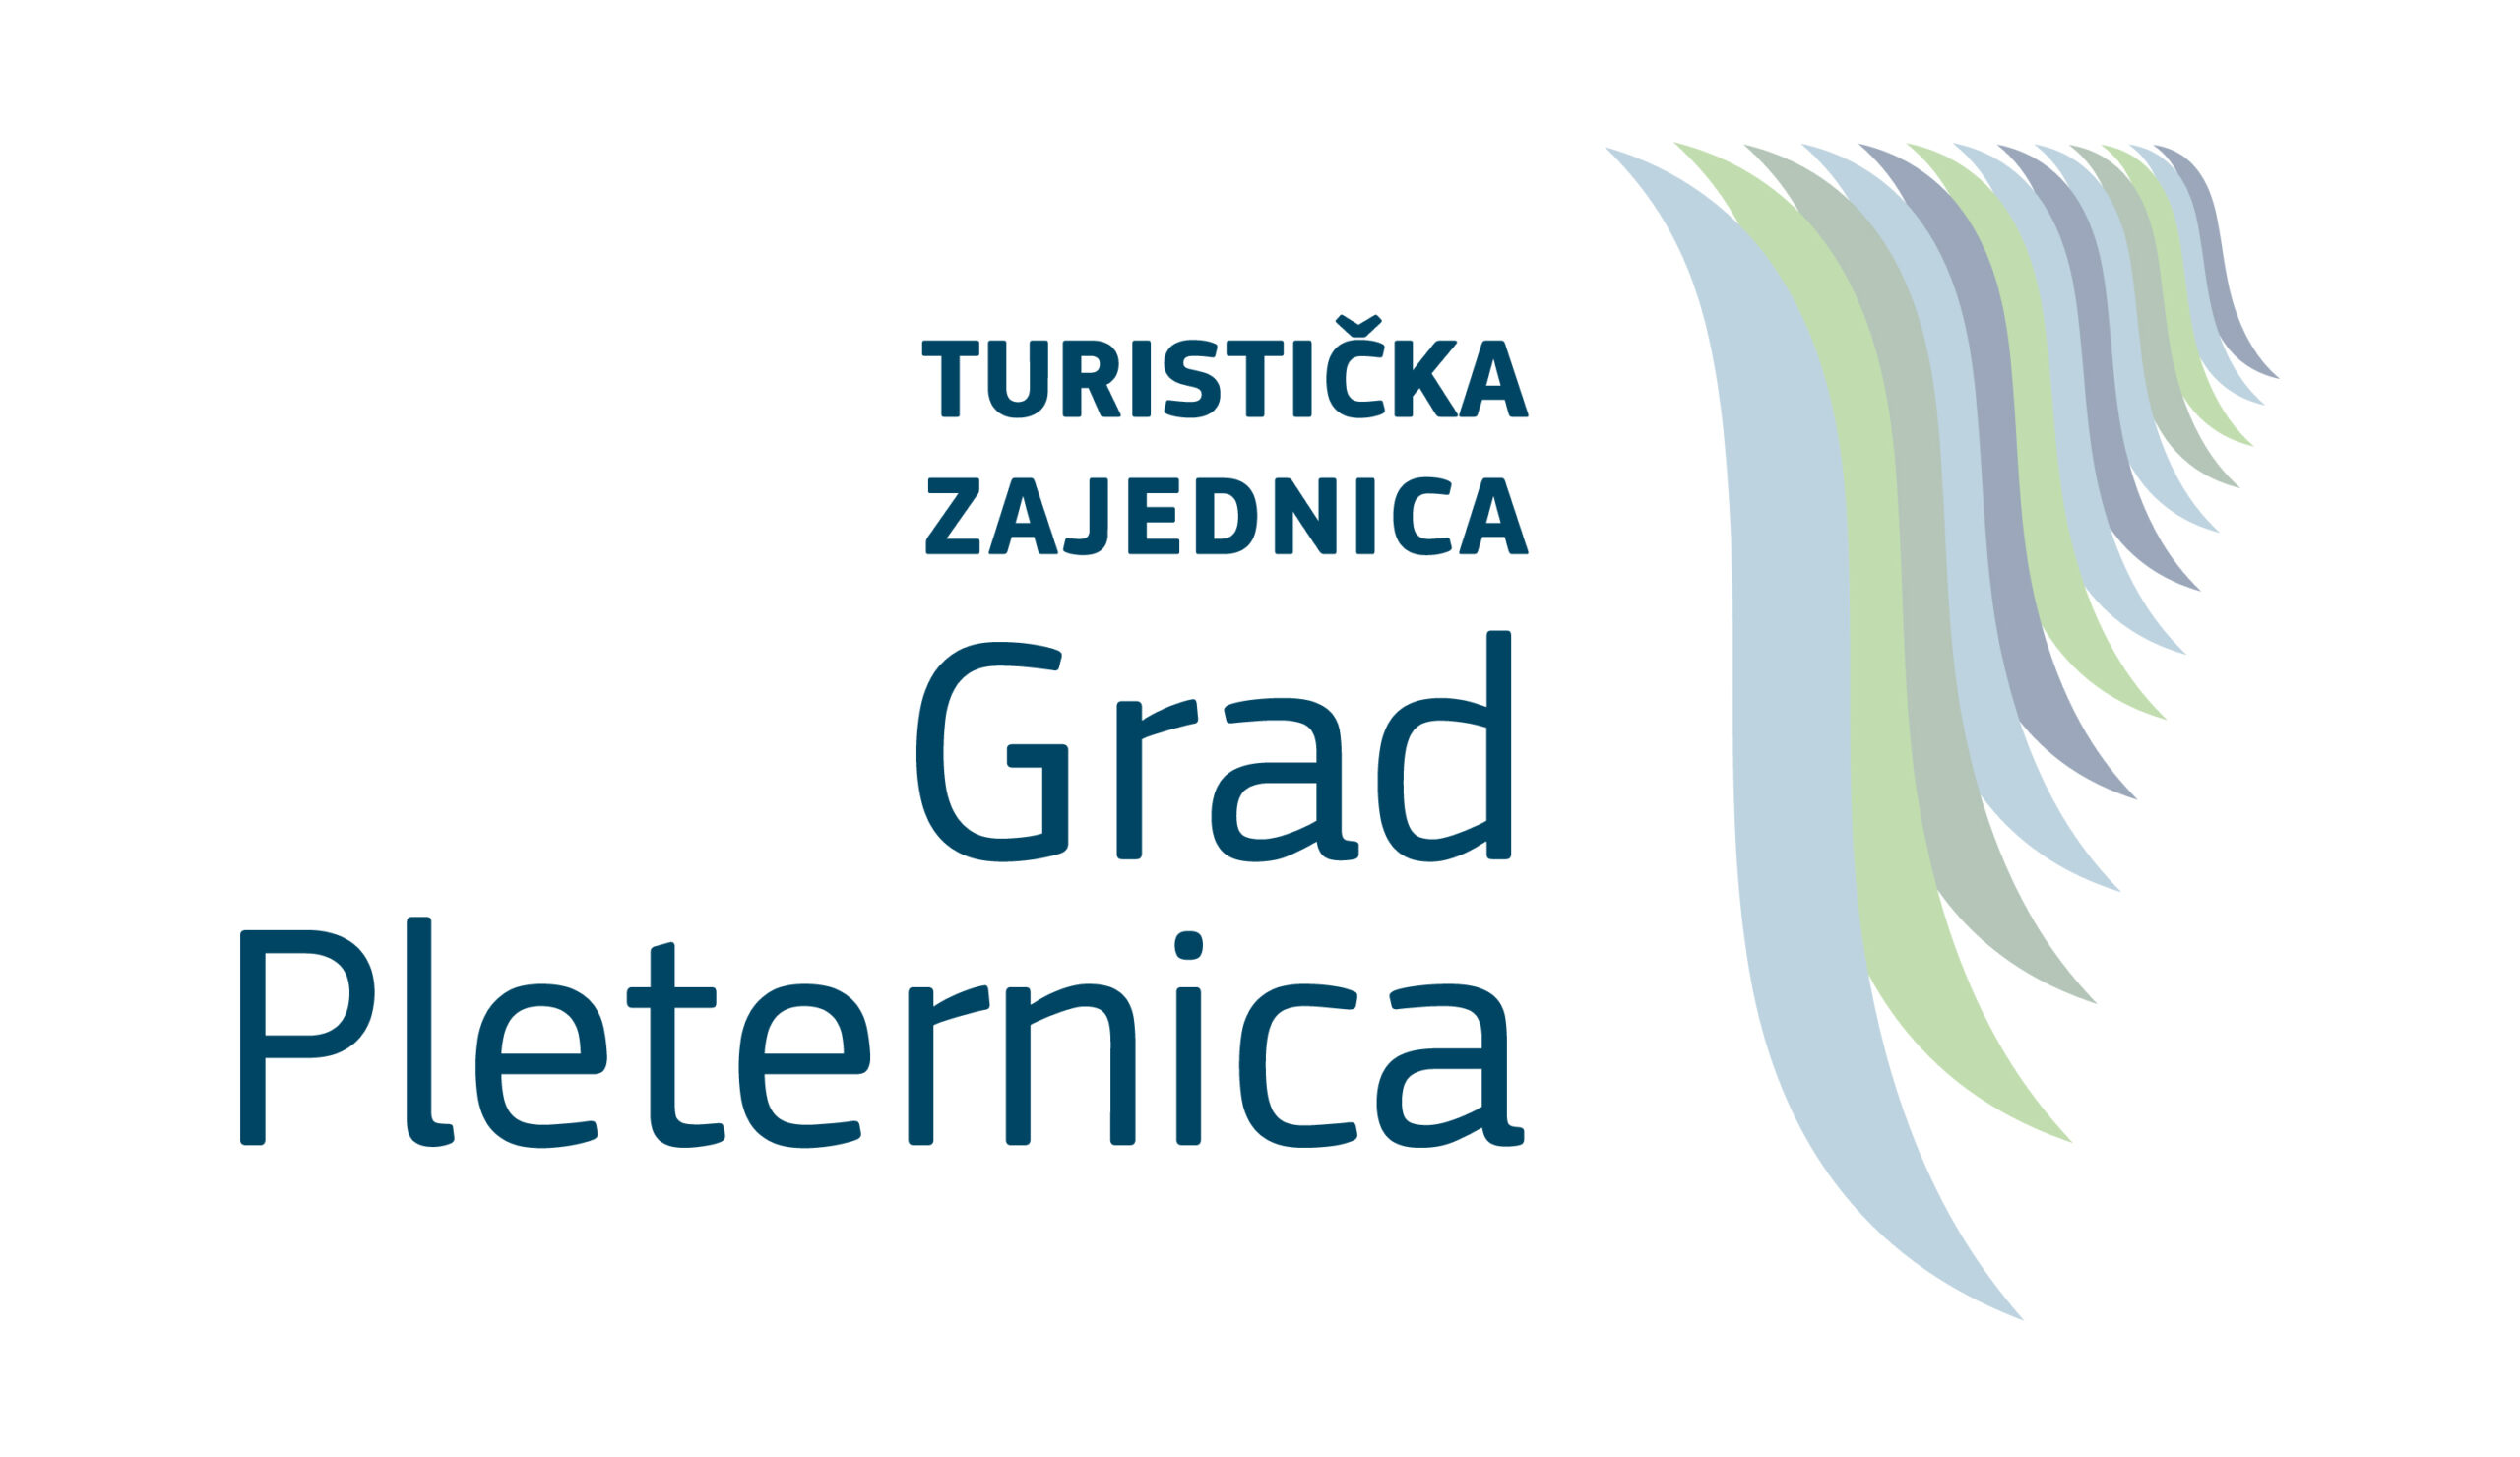 Turistička zajednica Grada Pleternice objavljuje javni natječaj za imenovanje direktora/direktorice turističke zajednice.